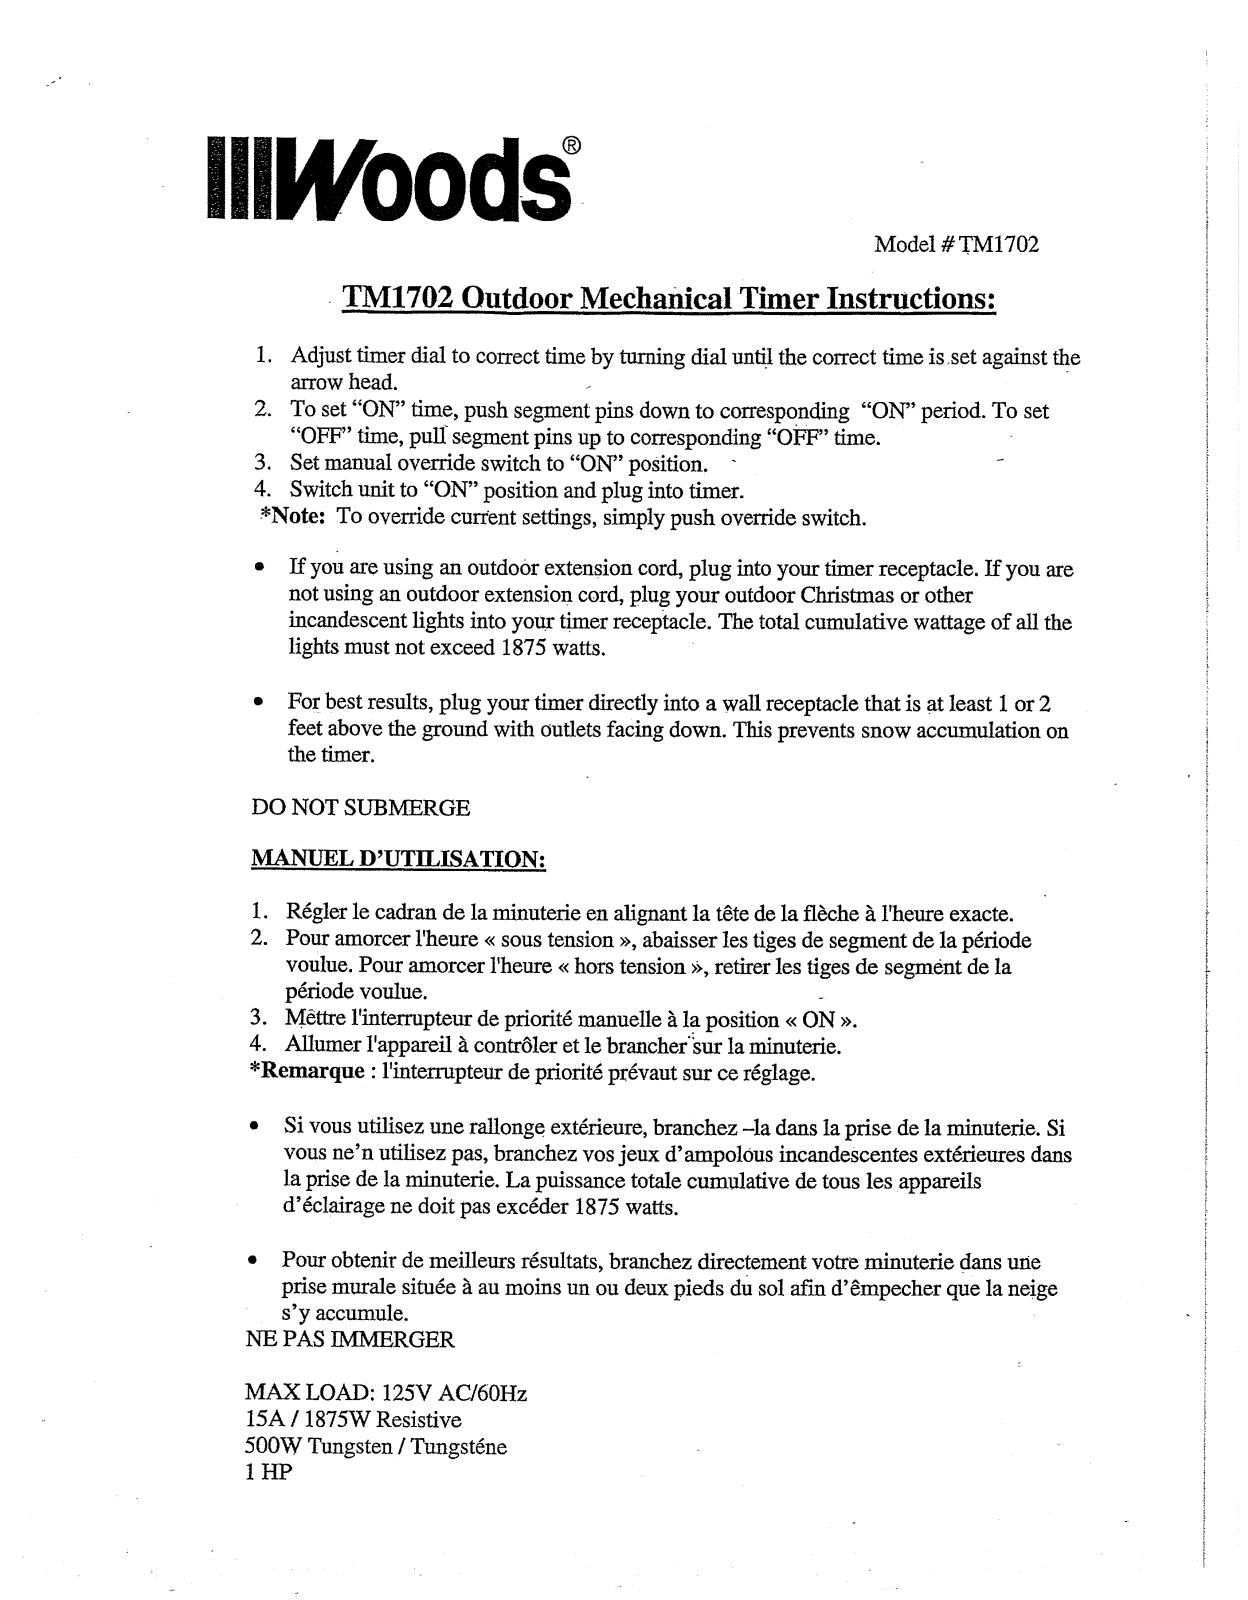 Woods TM1702 User Manual